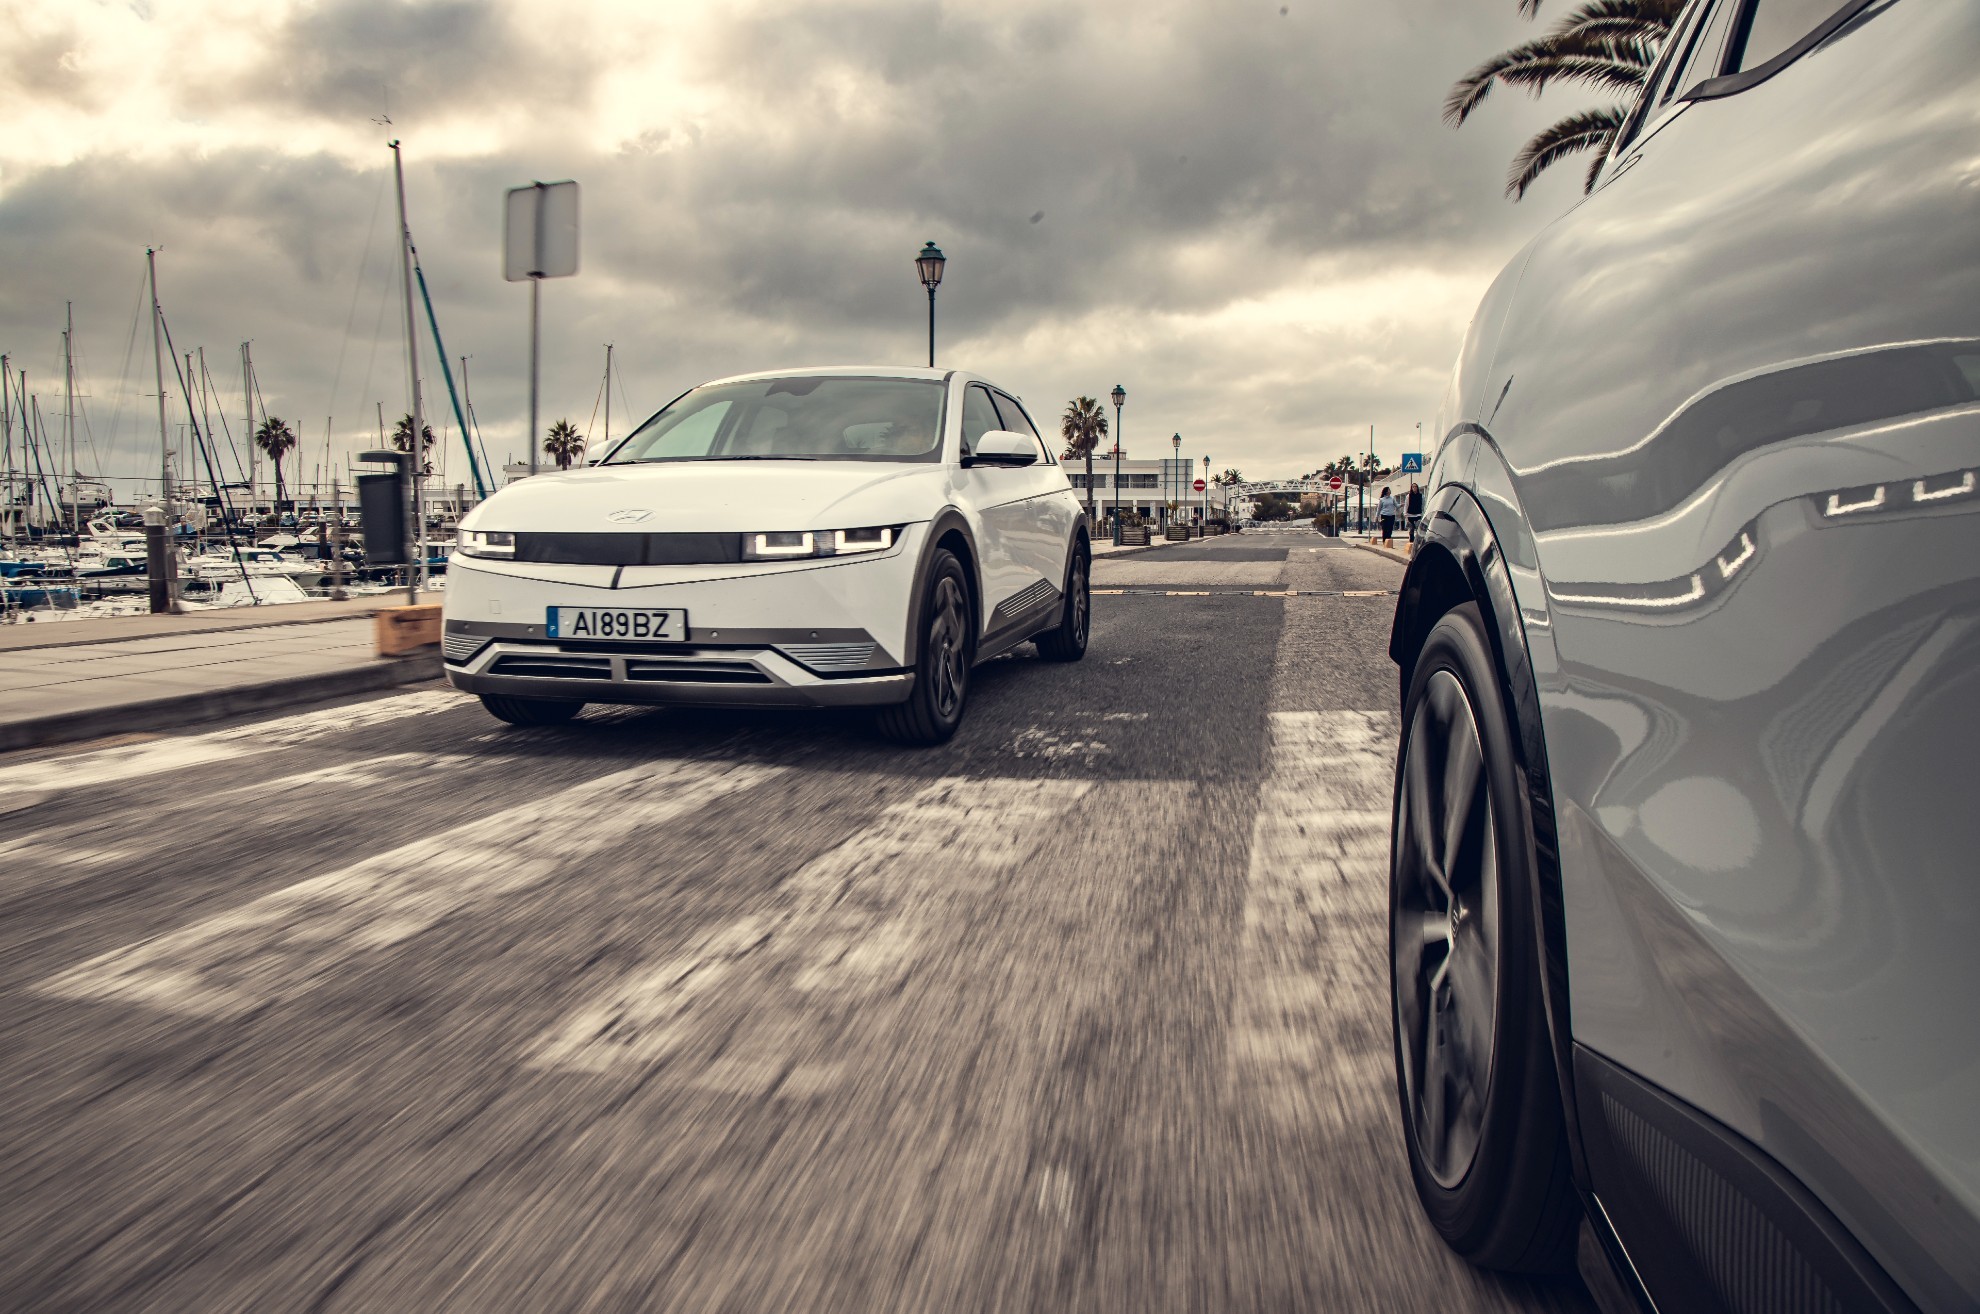 comparativa electricos - Renault Megane E-Tech - Volkswagen ID.3 - Hyundai Ioniq 5 - test drive